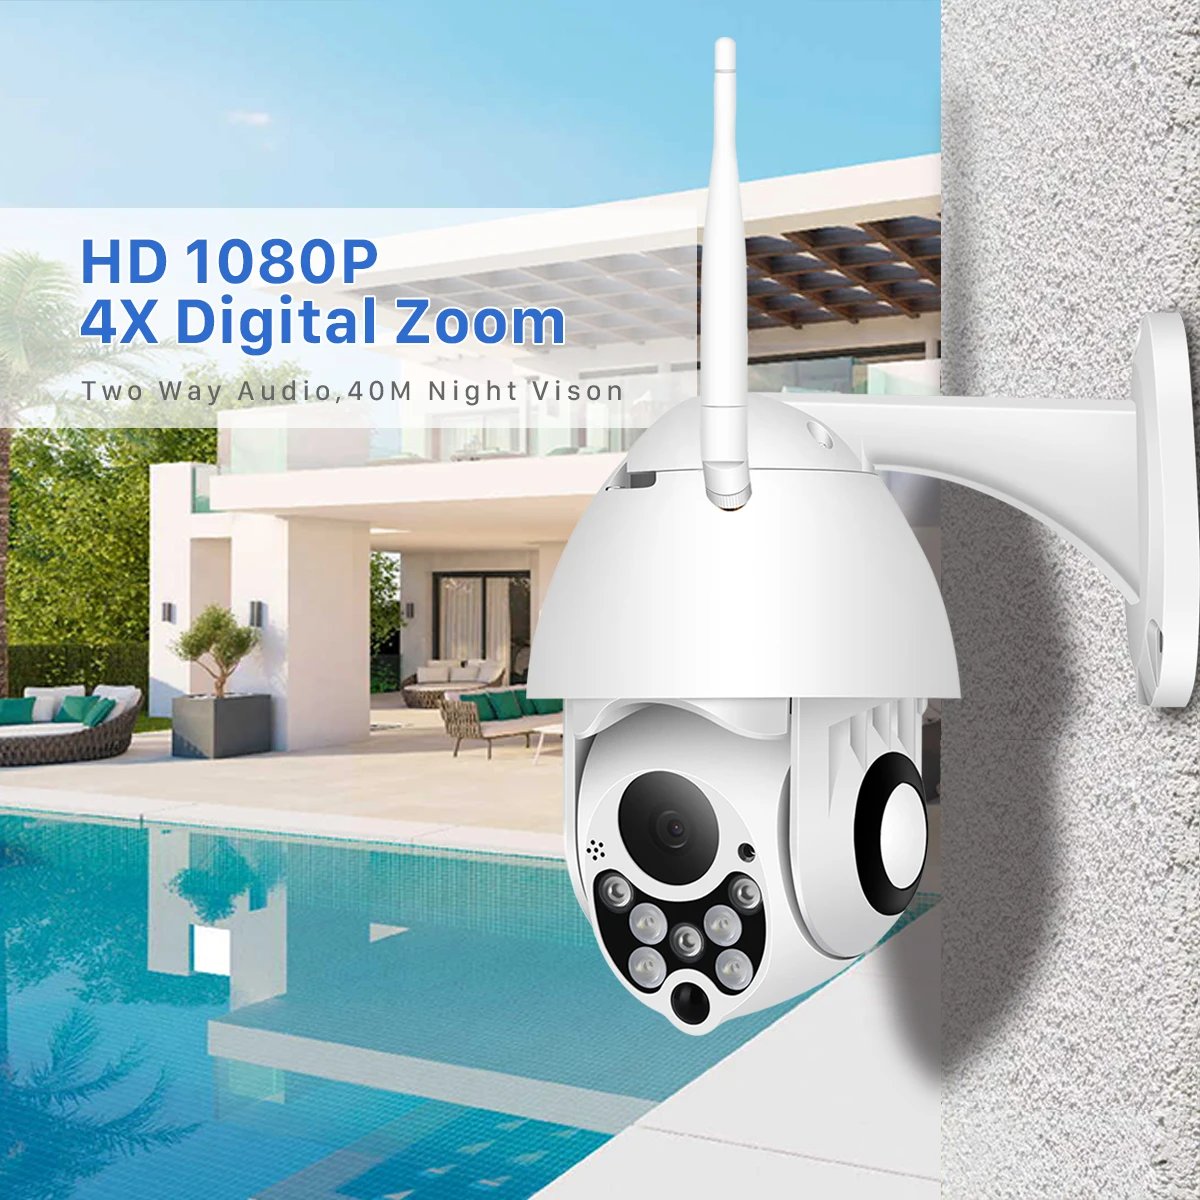 Besder 1080P PTZ IP камера с сигнализацией, наружная Wifi камера, двухсторонняя аудио 4X цифровой зум, ИК ночное видение, CCTV камера безопасности